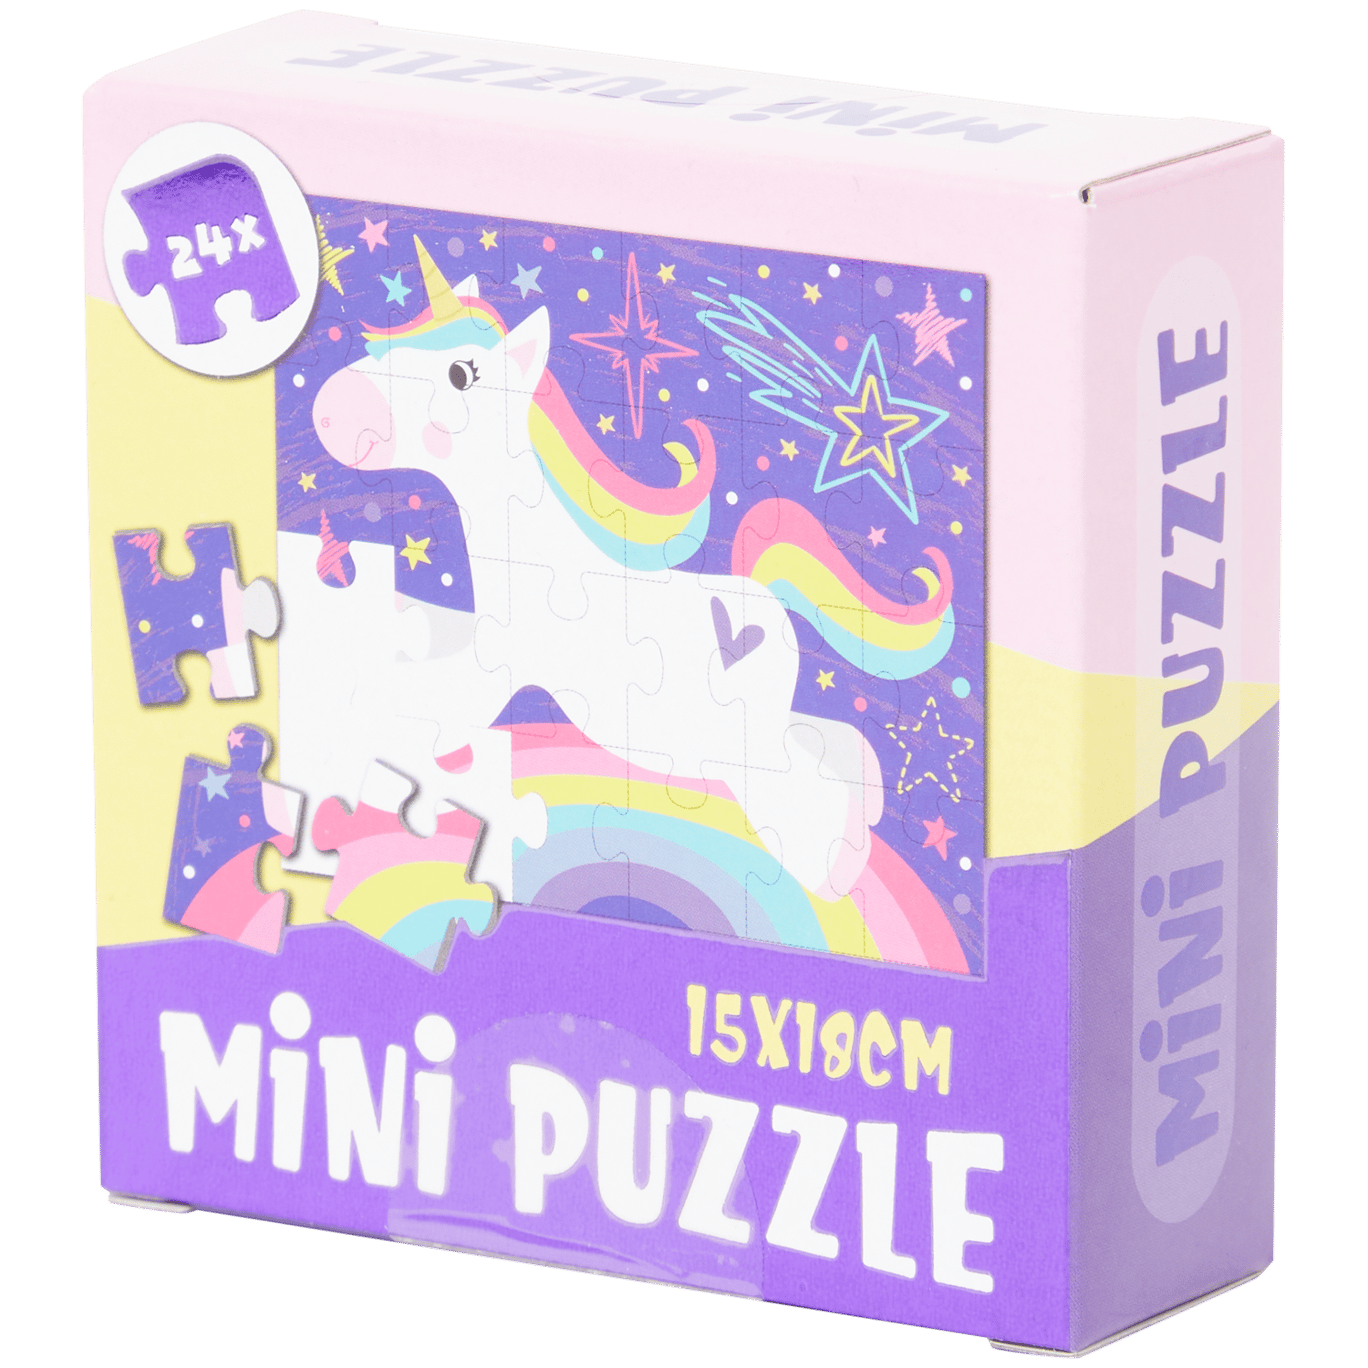 Mini-Puzzle